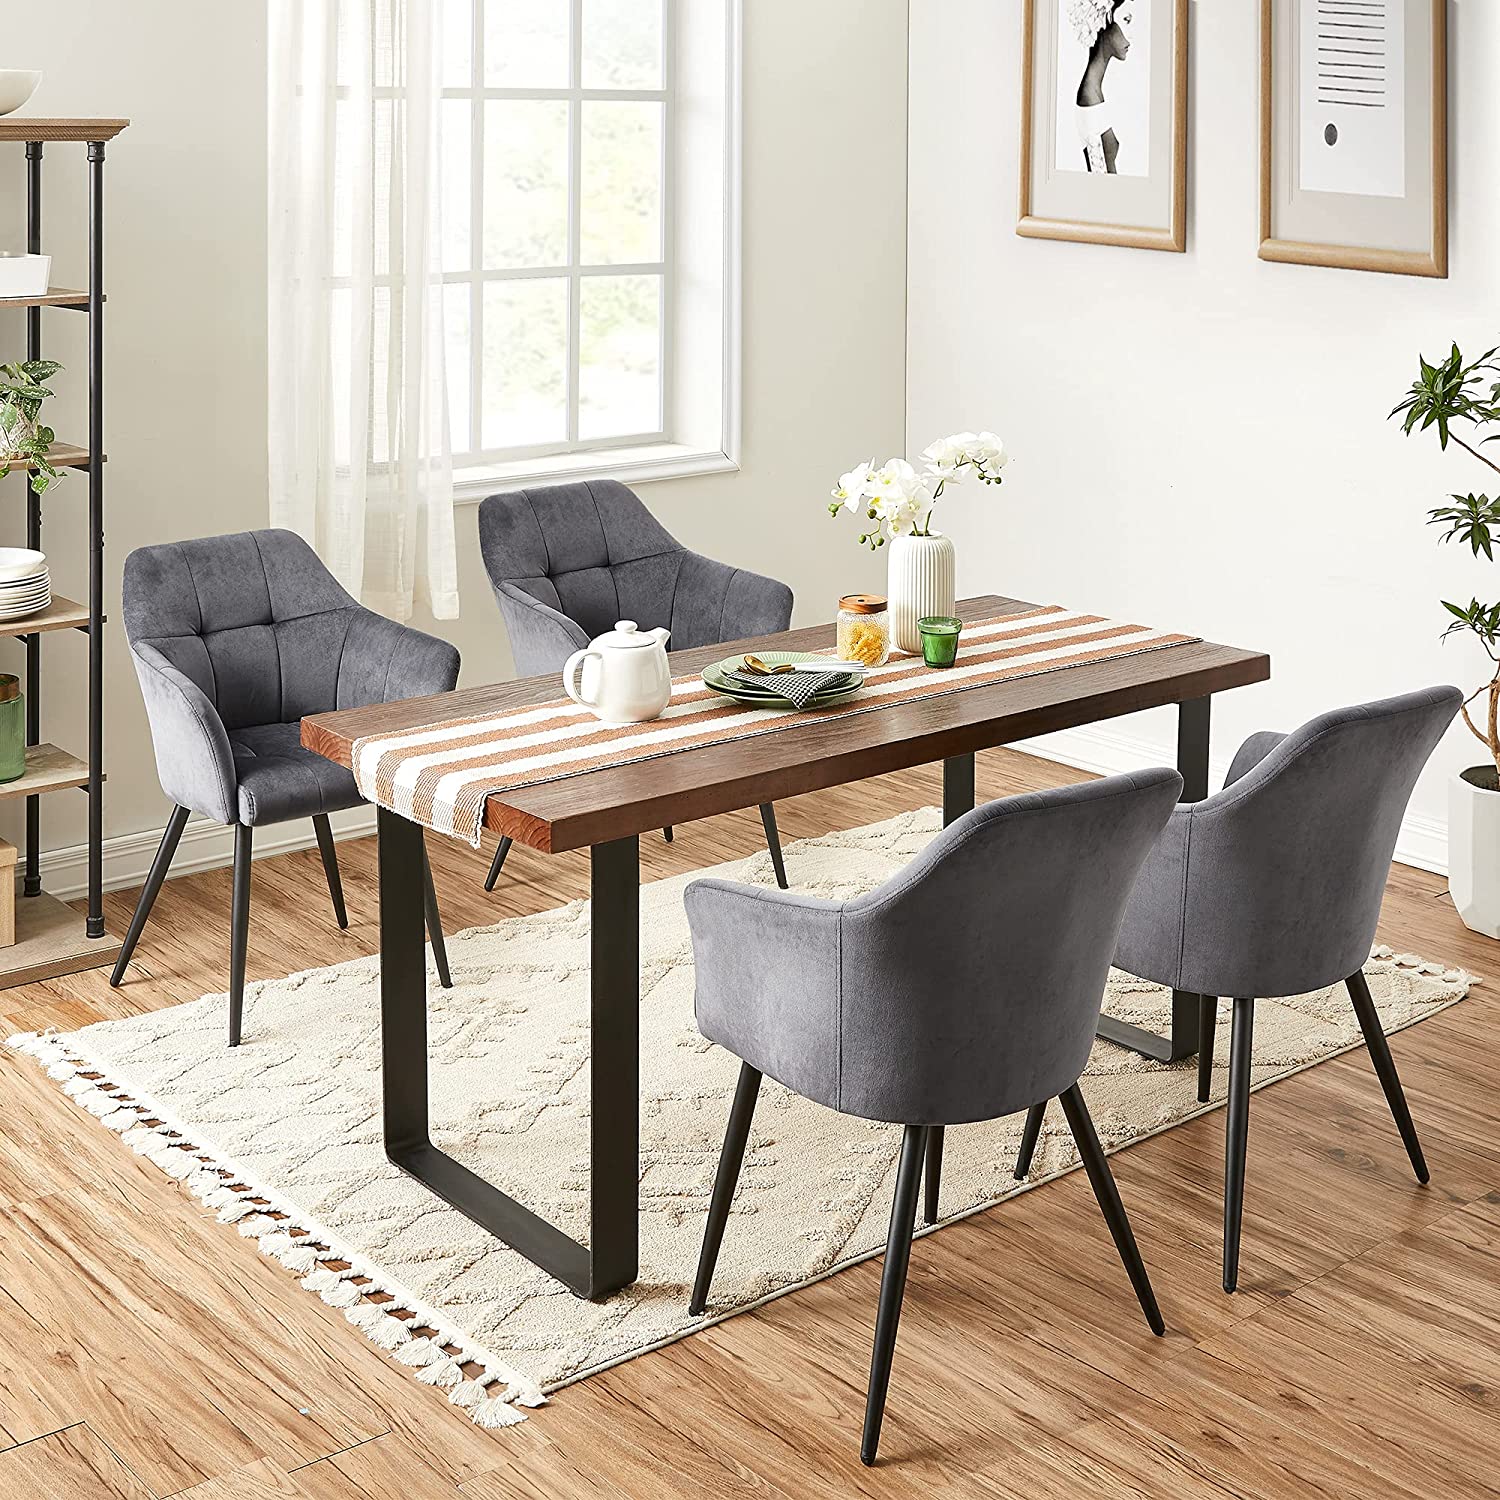 Nancy's Campobello Dining room chair - Kitchen chair - Upholstered - Metal - Velvet - Gray - Black - 61 x 60 x 86.5 cm